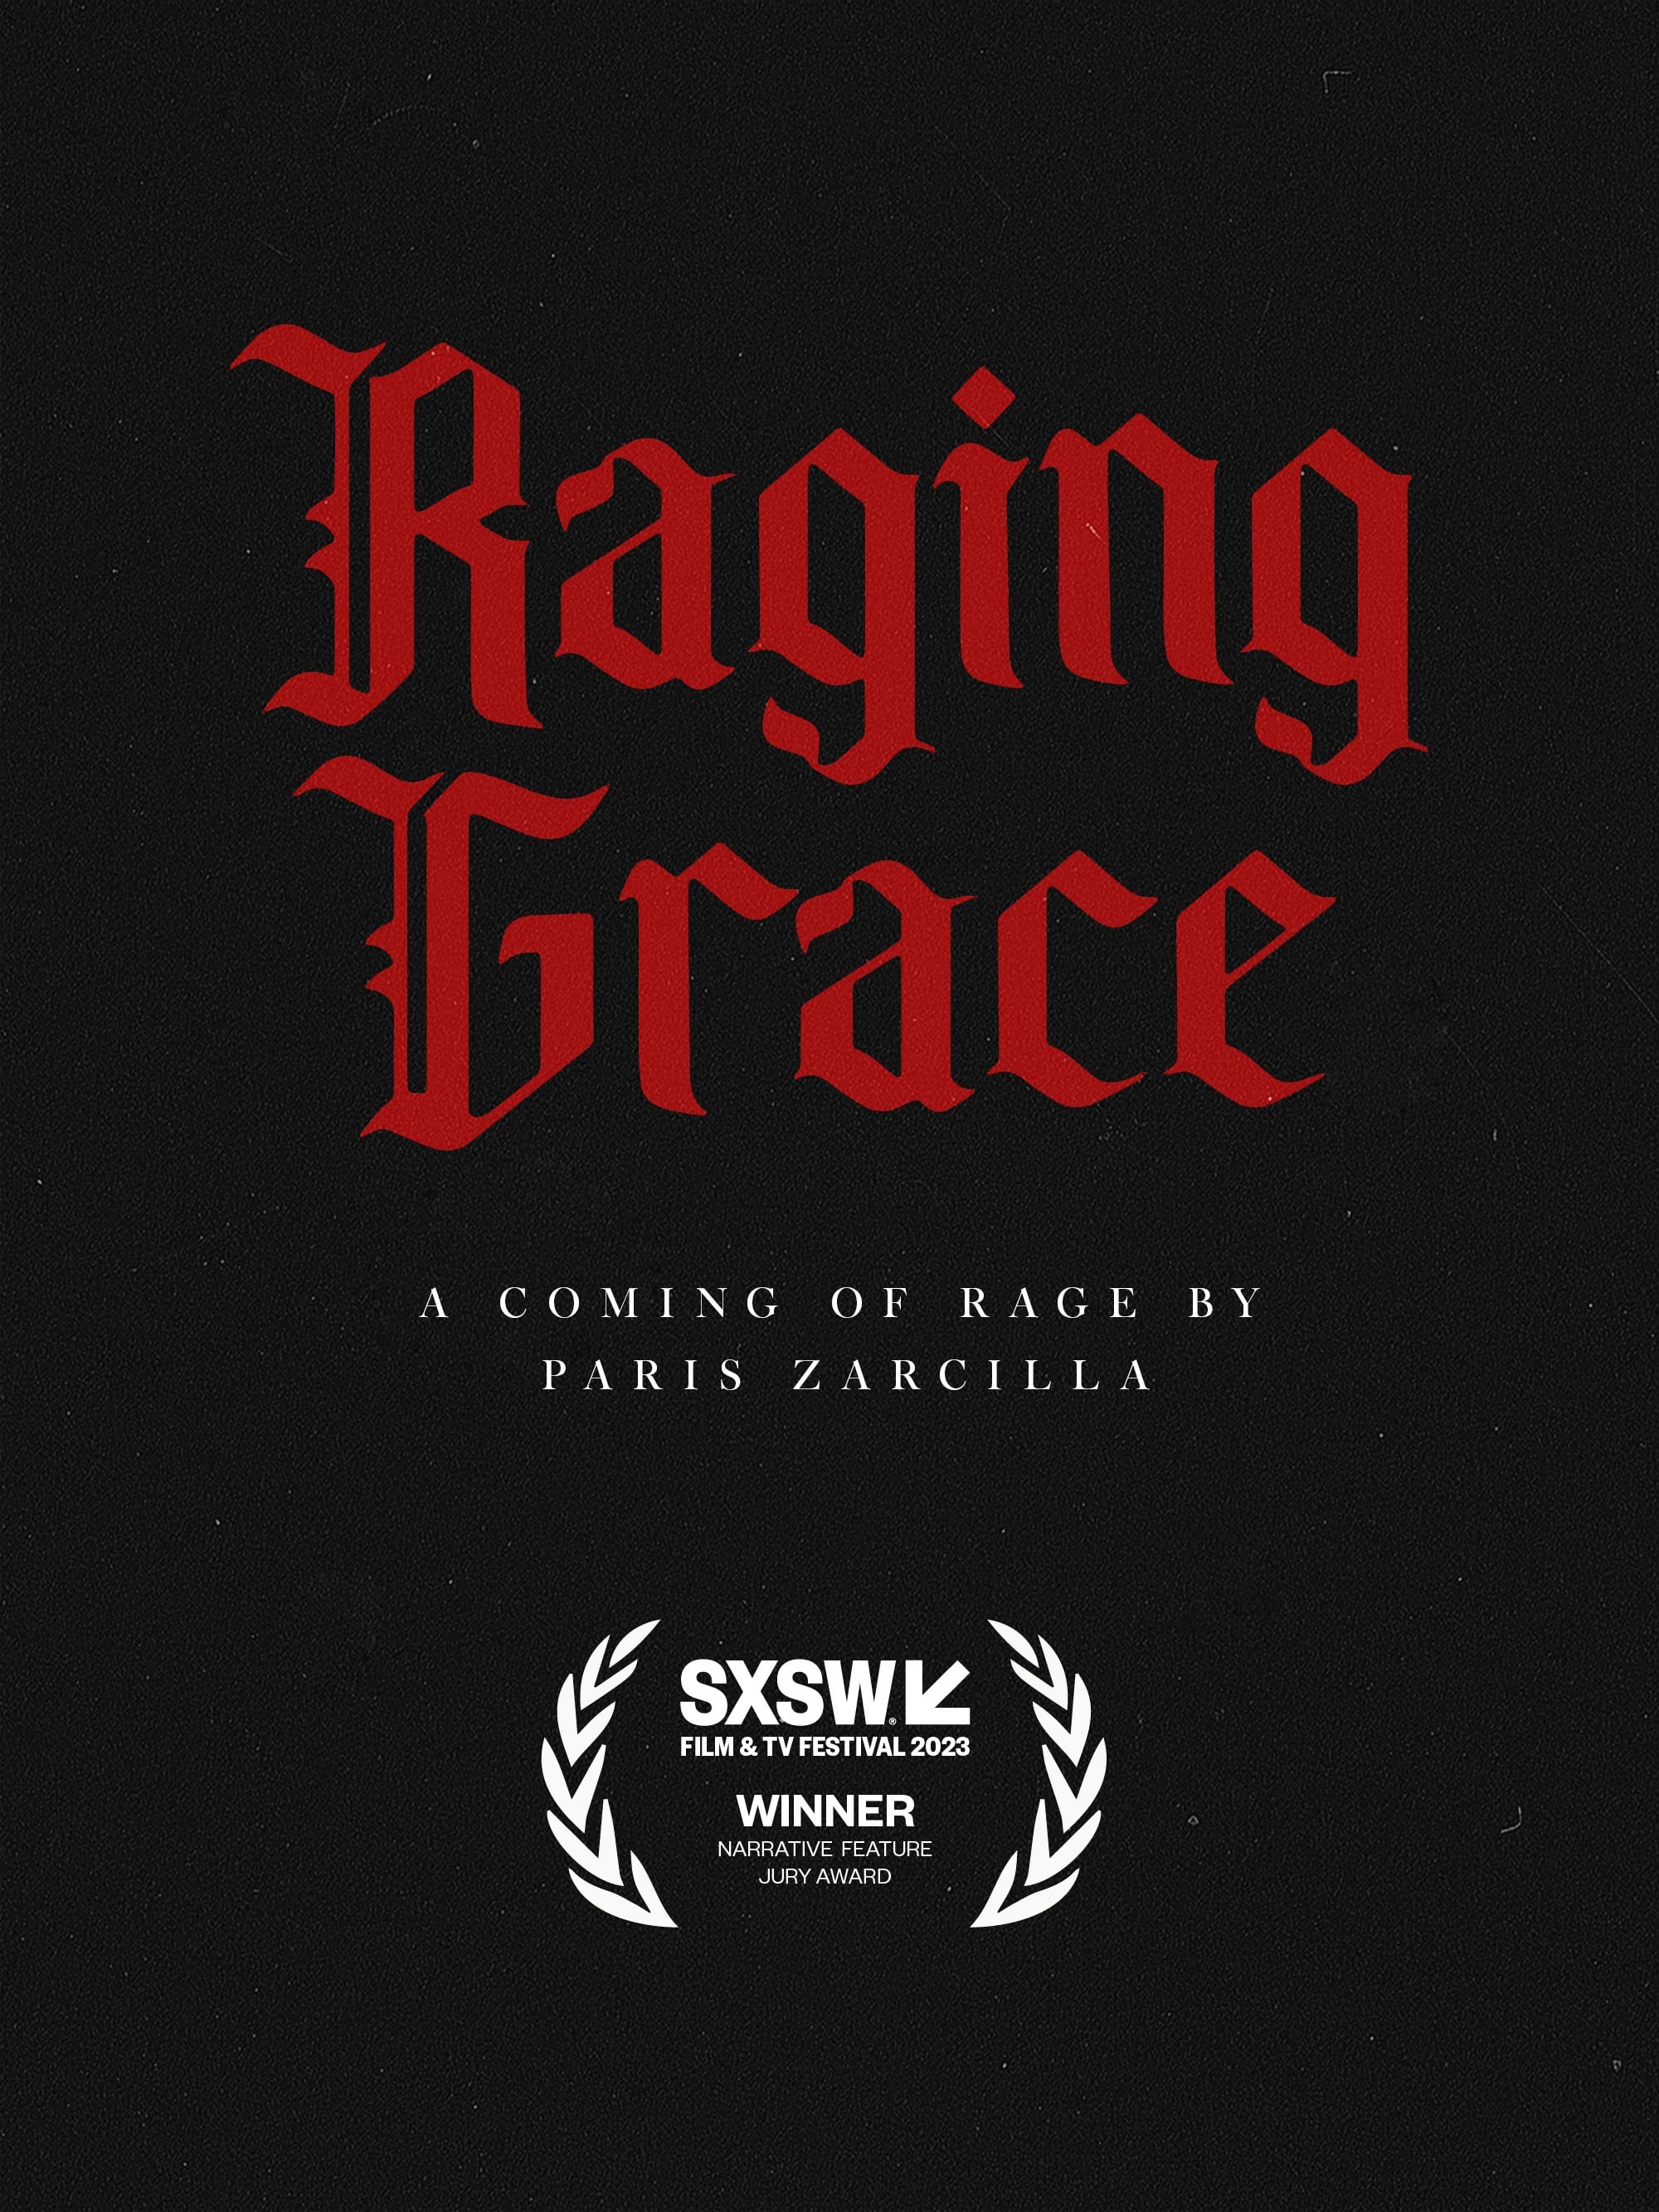 Raging Grace